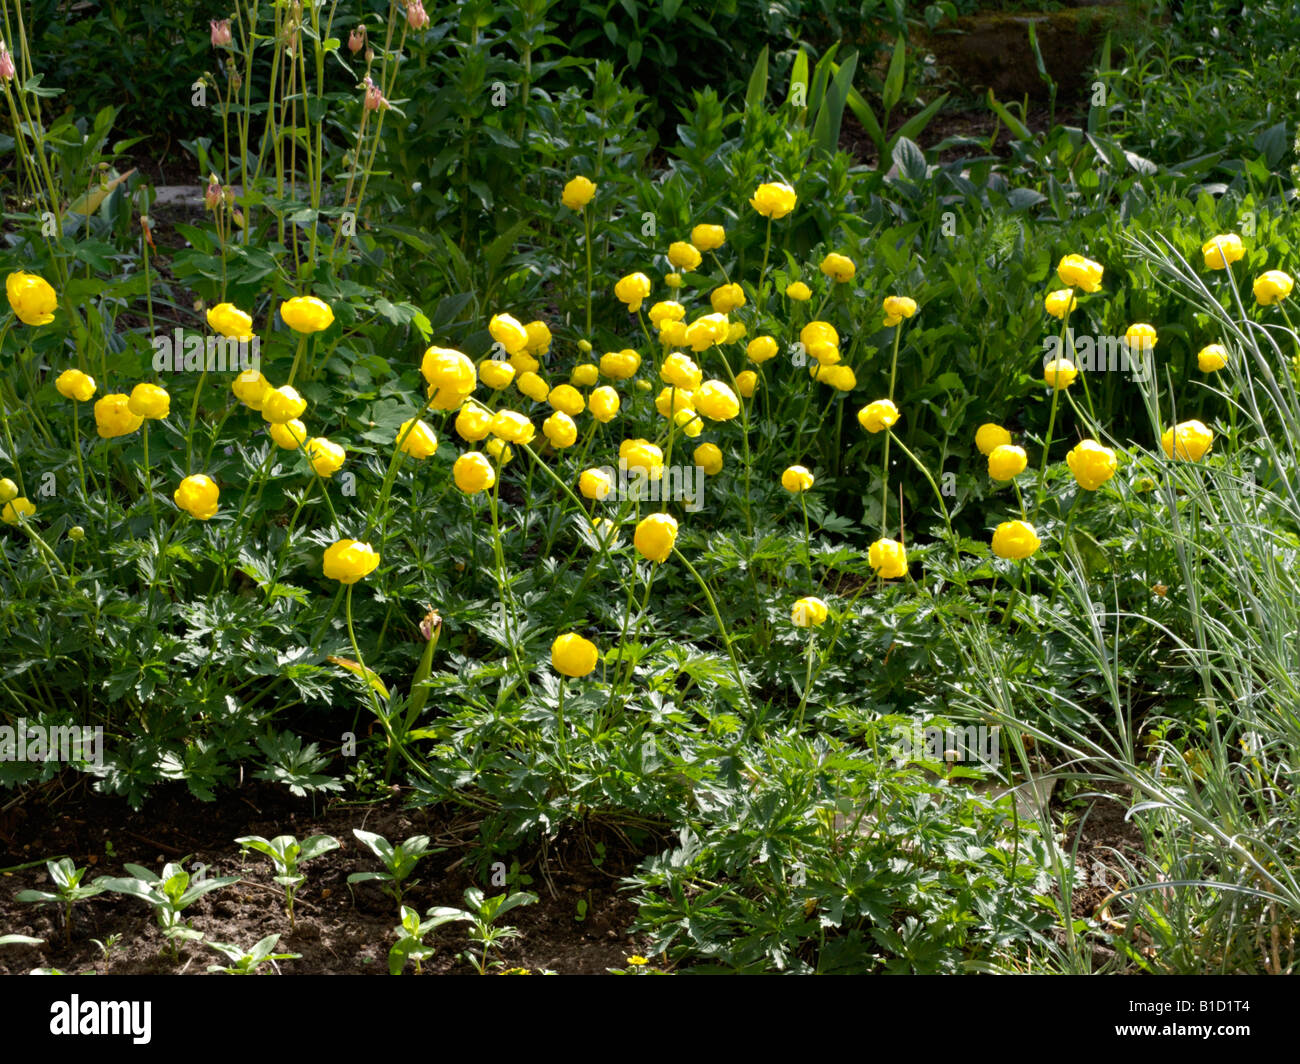 European globeflower (Trollius europaeus) Stock Photo